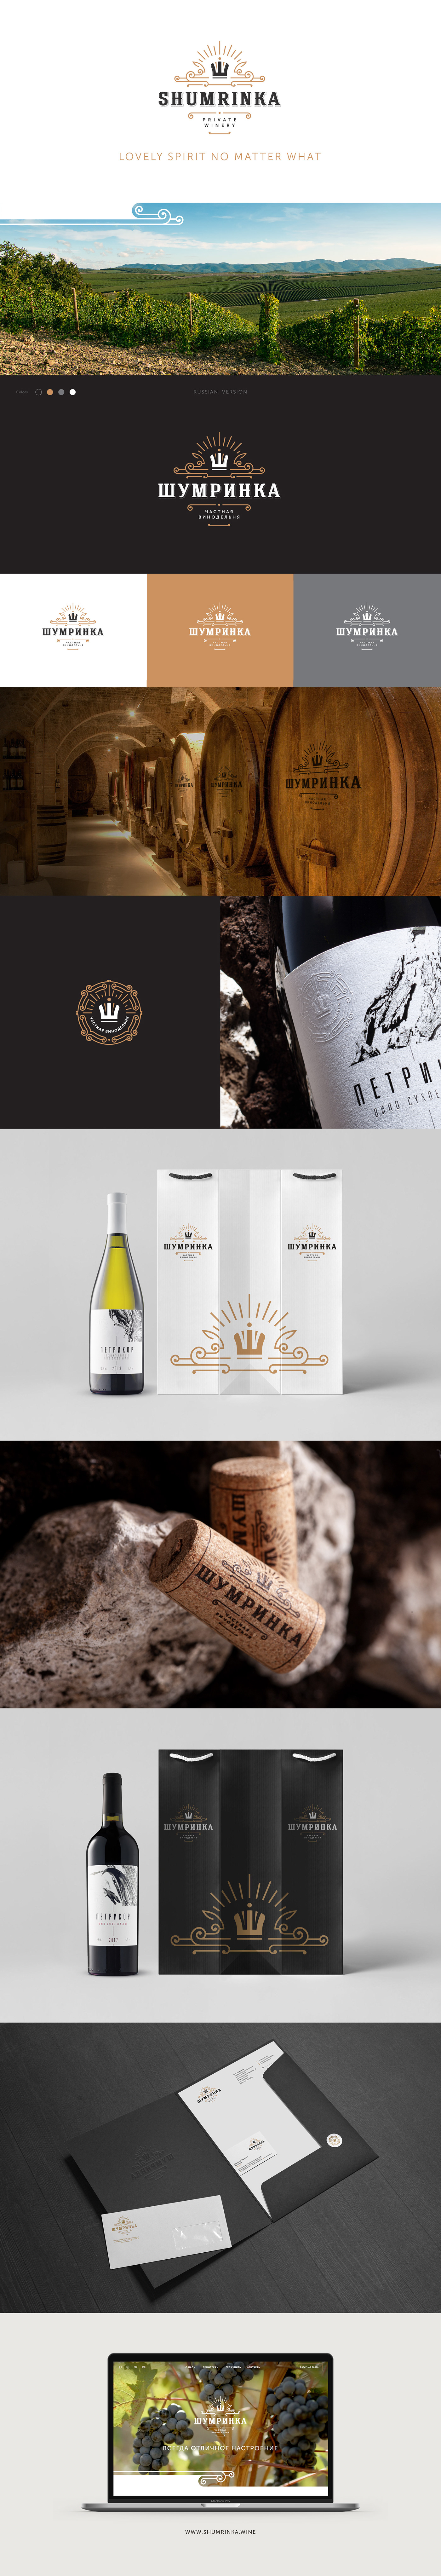 Label Private winery shumrinka wine branding  graphicdesign Logotype